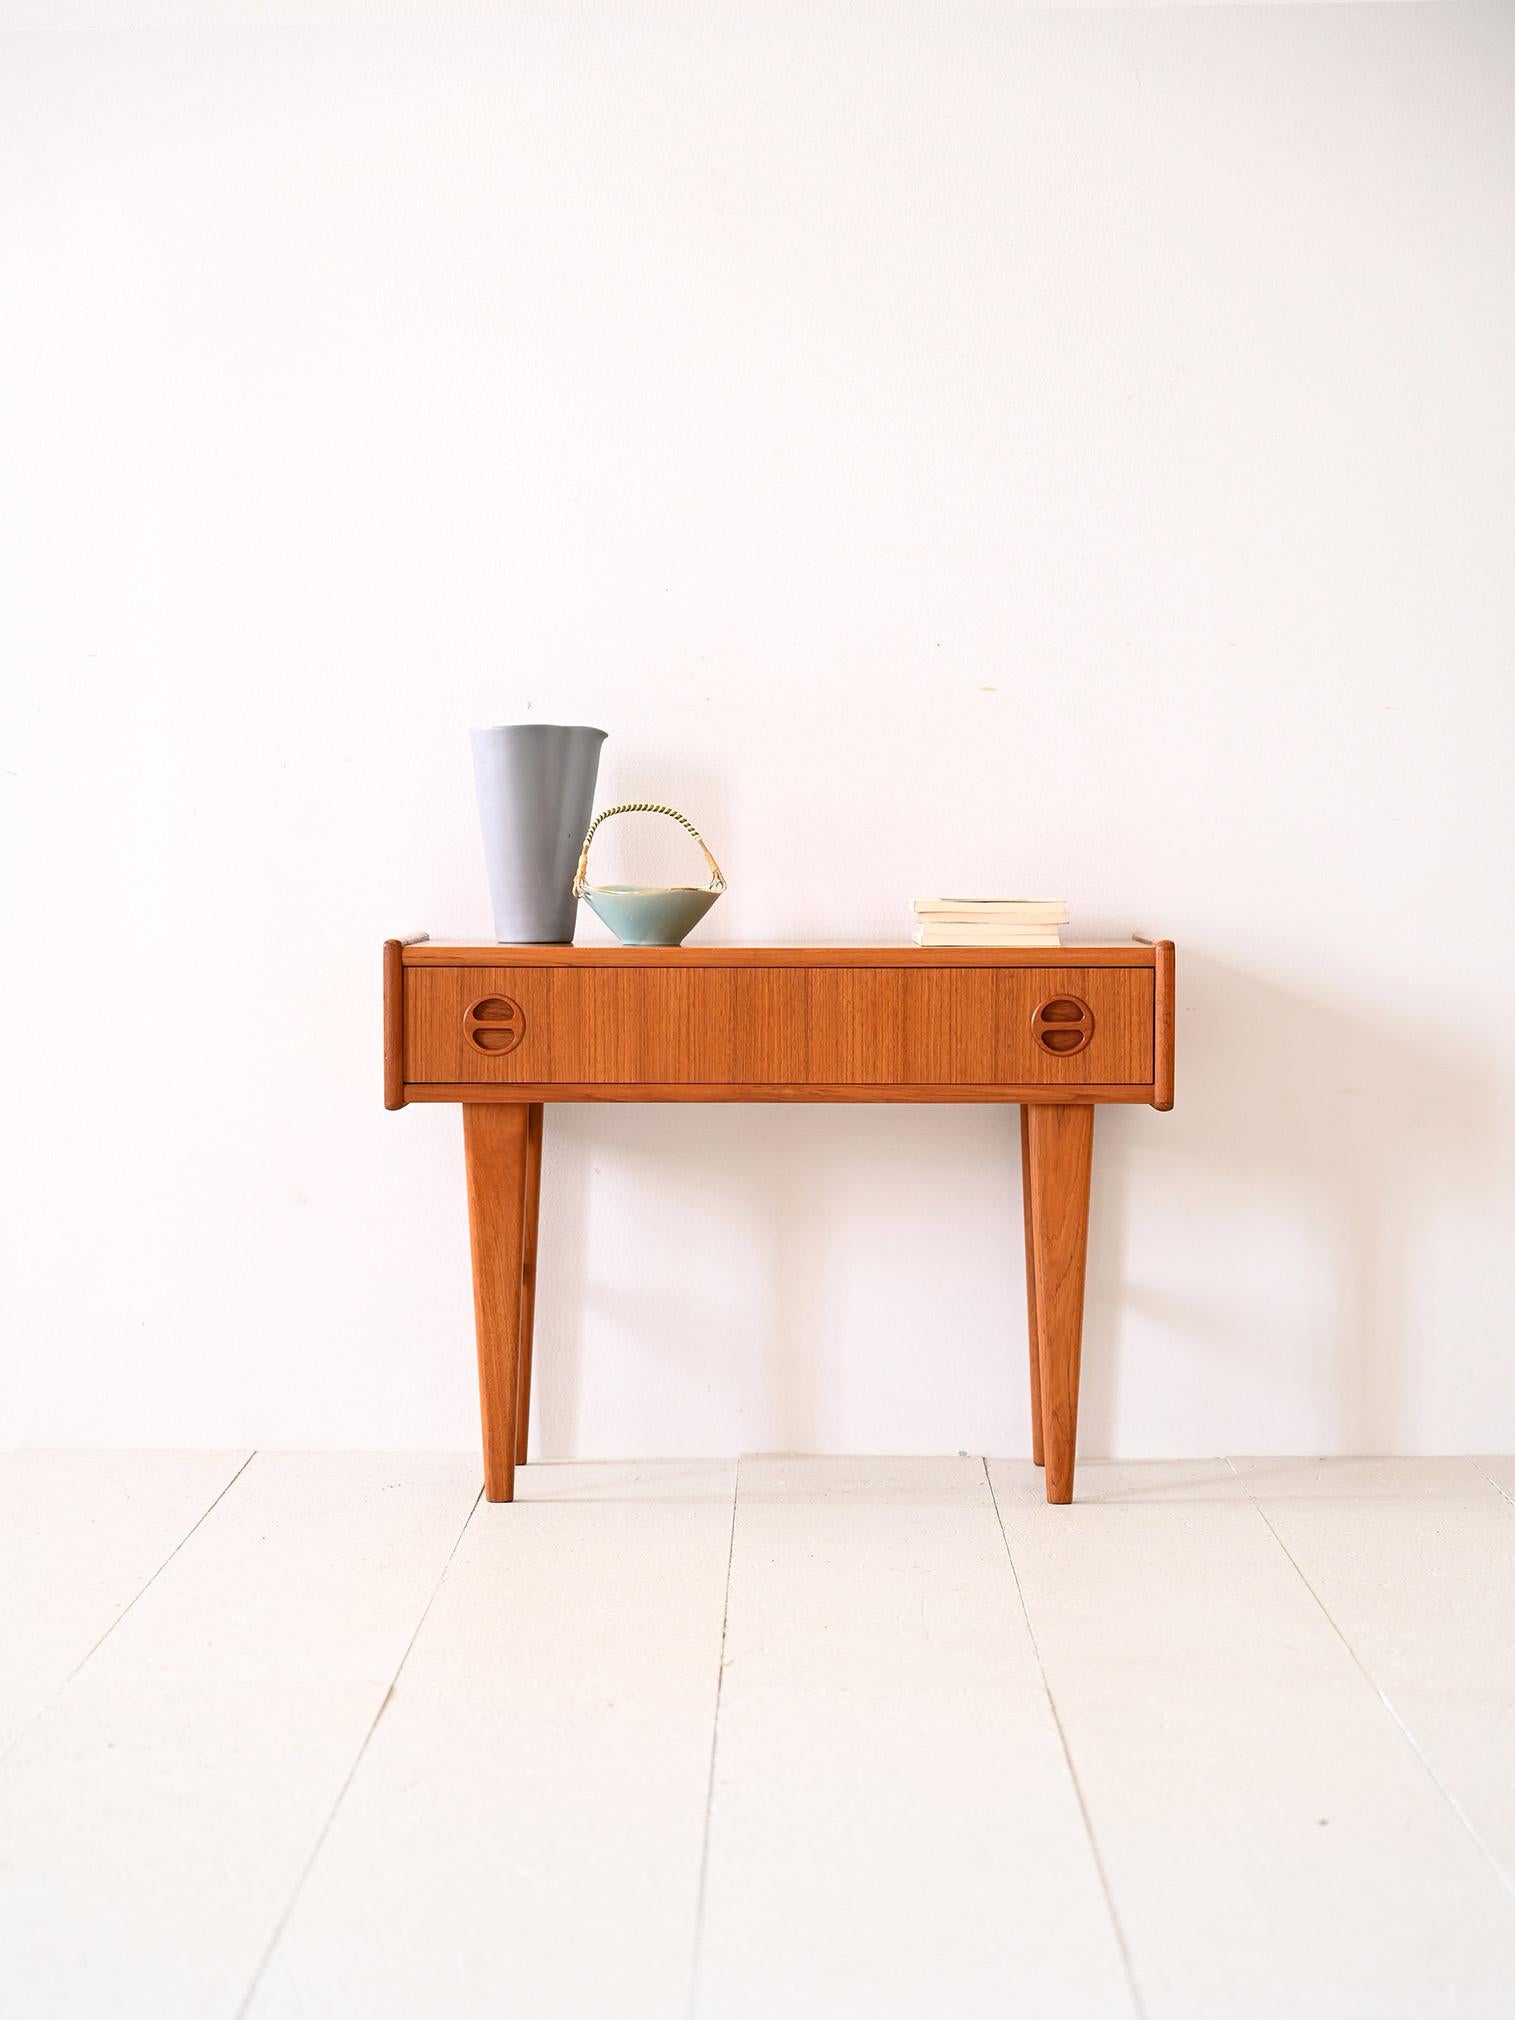 Table basse vintage avec tiroir.

Un meuble original qui peut également servir de table de chevet pour la chambre à coucher. Il se distingue par la forme rectangulaire de son plateau et le long tiroir qui se trouve en dessous. Les pieds coniques et